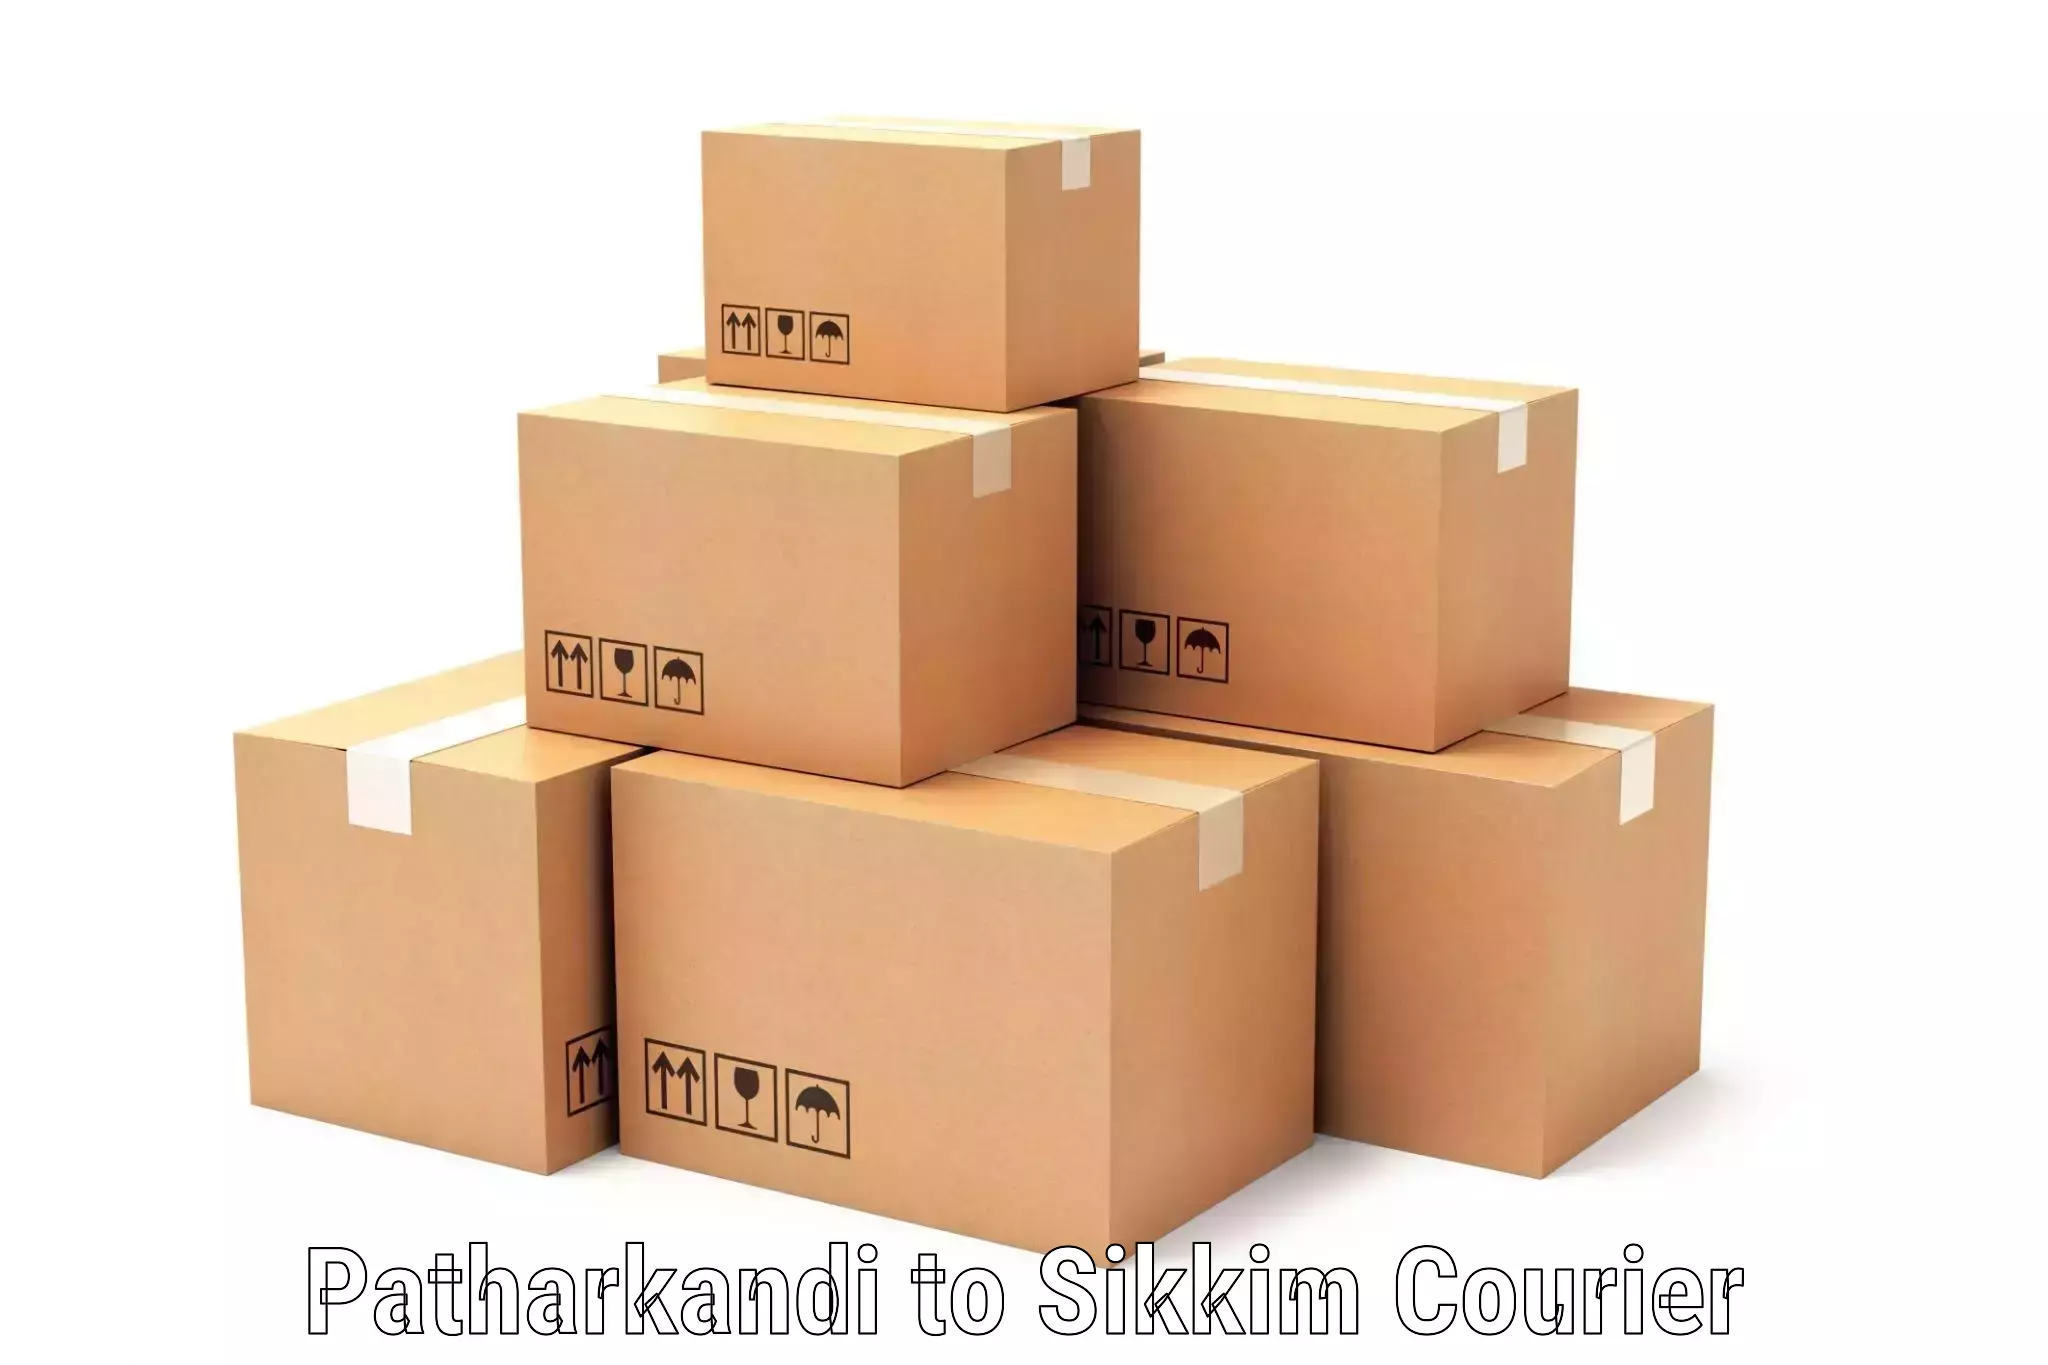 Express delivery capabilities Patharkandi to Mangan